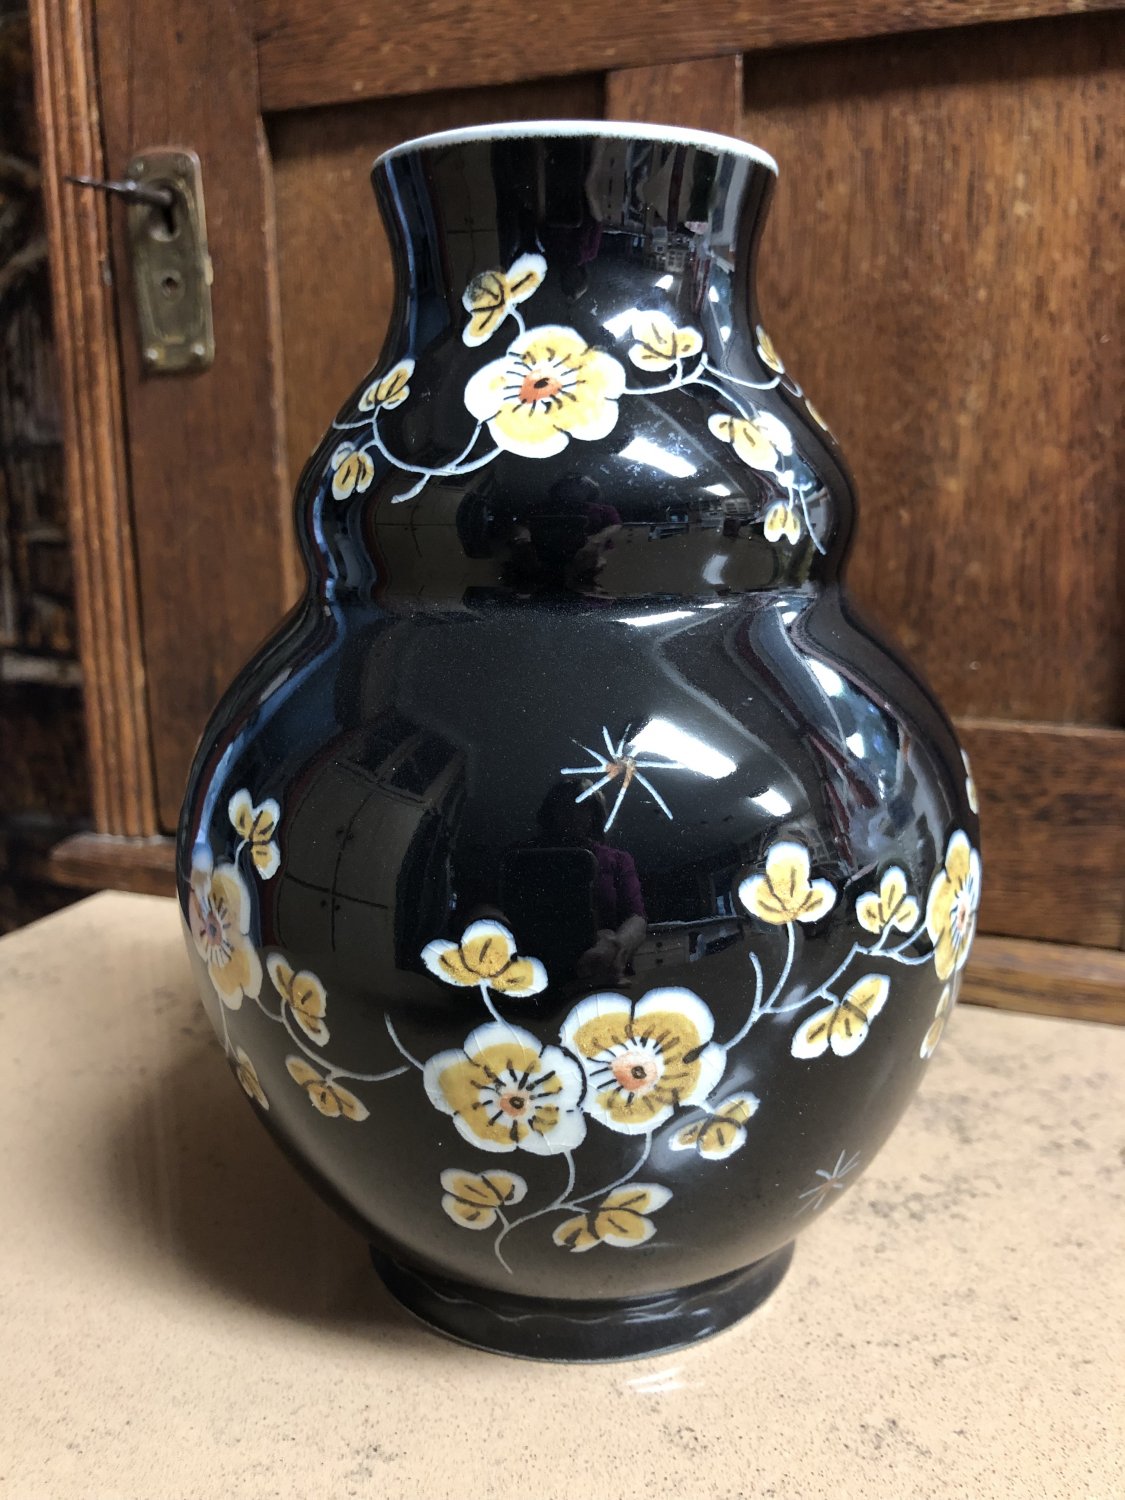 1967 De Porceleyne Fles Delft Black Scratch 7 Inch Tall Vase